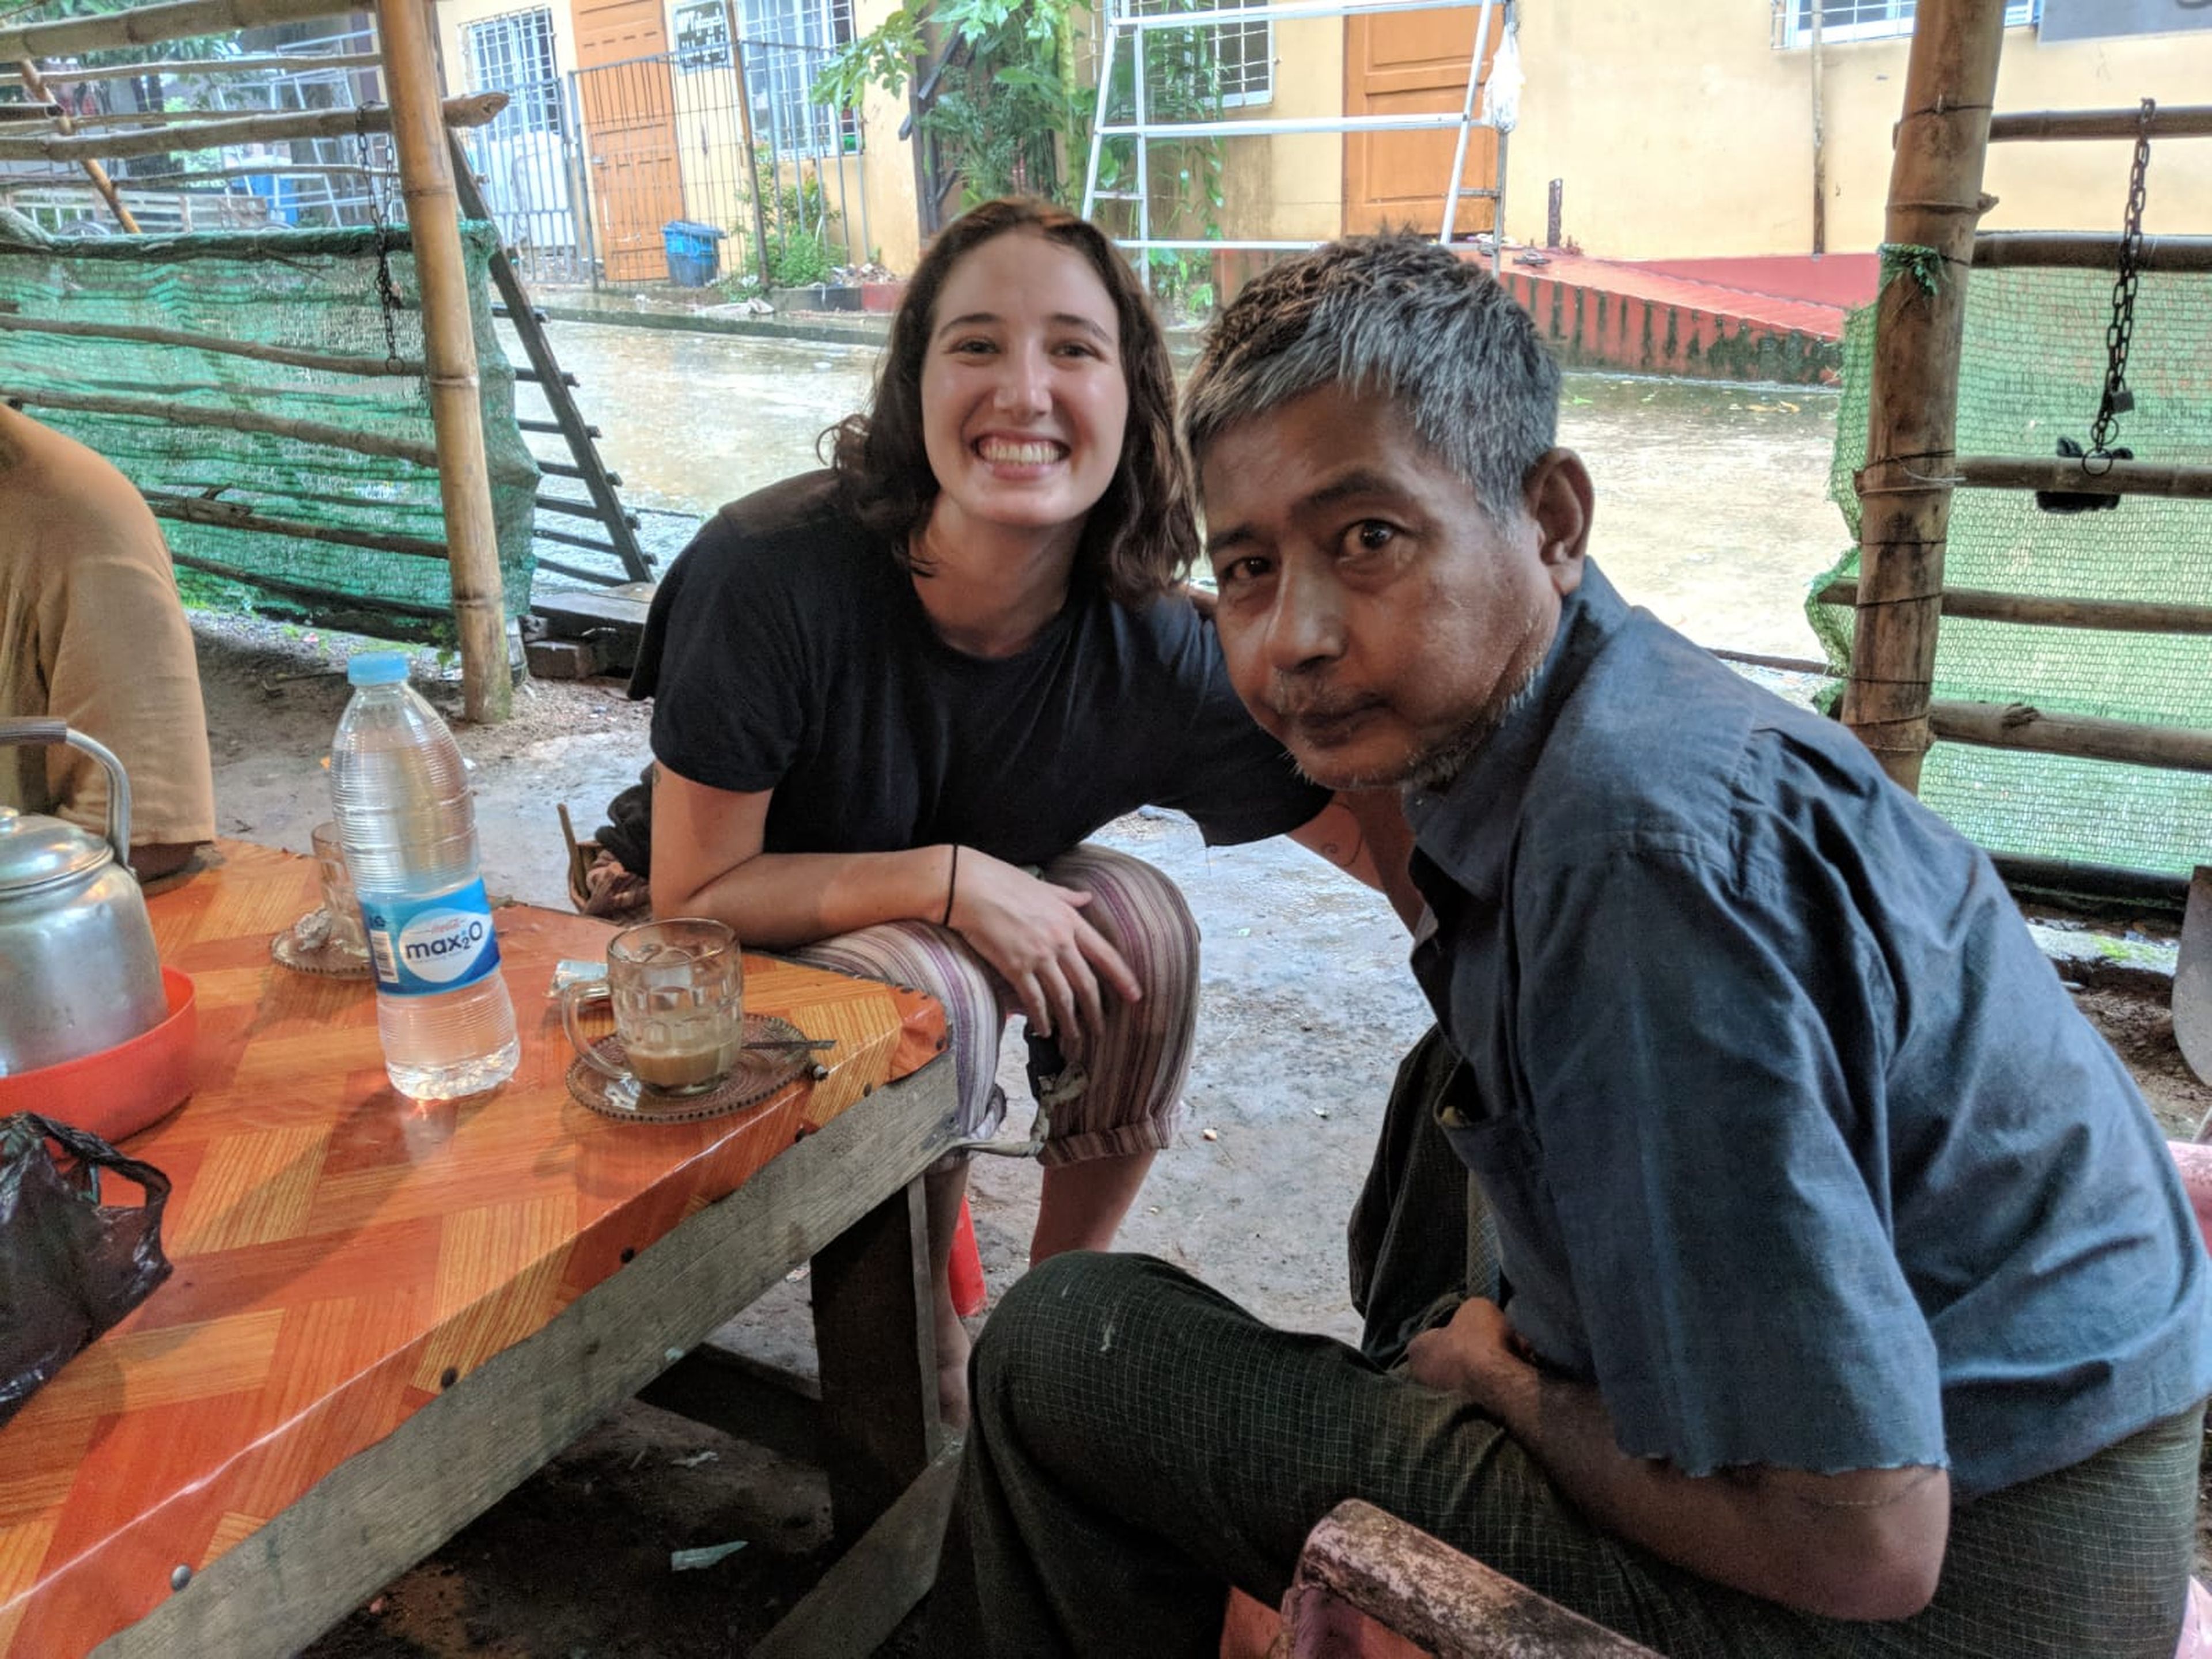 En Myanmar pasé una semana haciendo un voluntariado ayudando en un hospital, donde conecté mucho con varios pacientes.